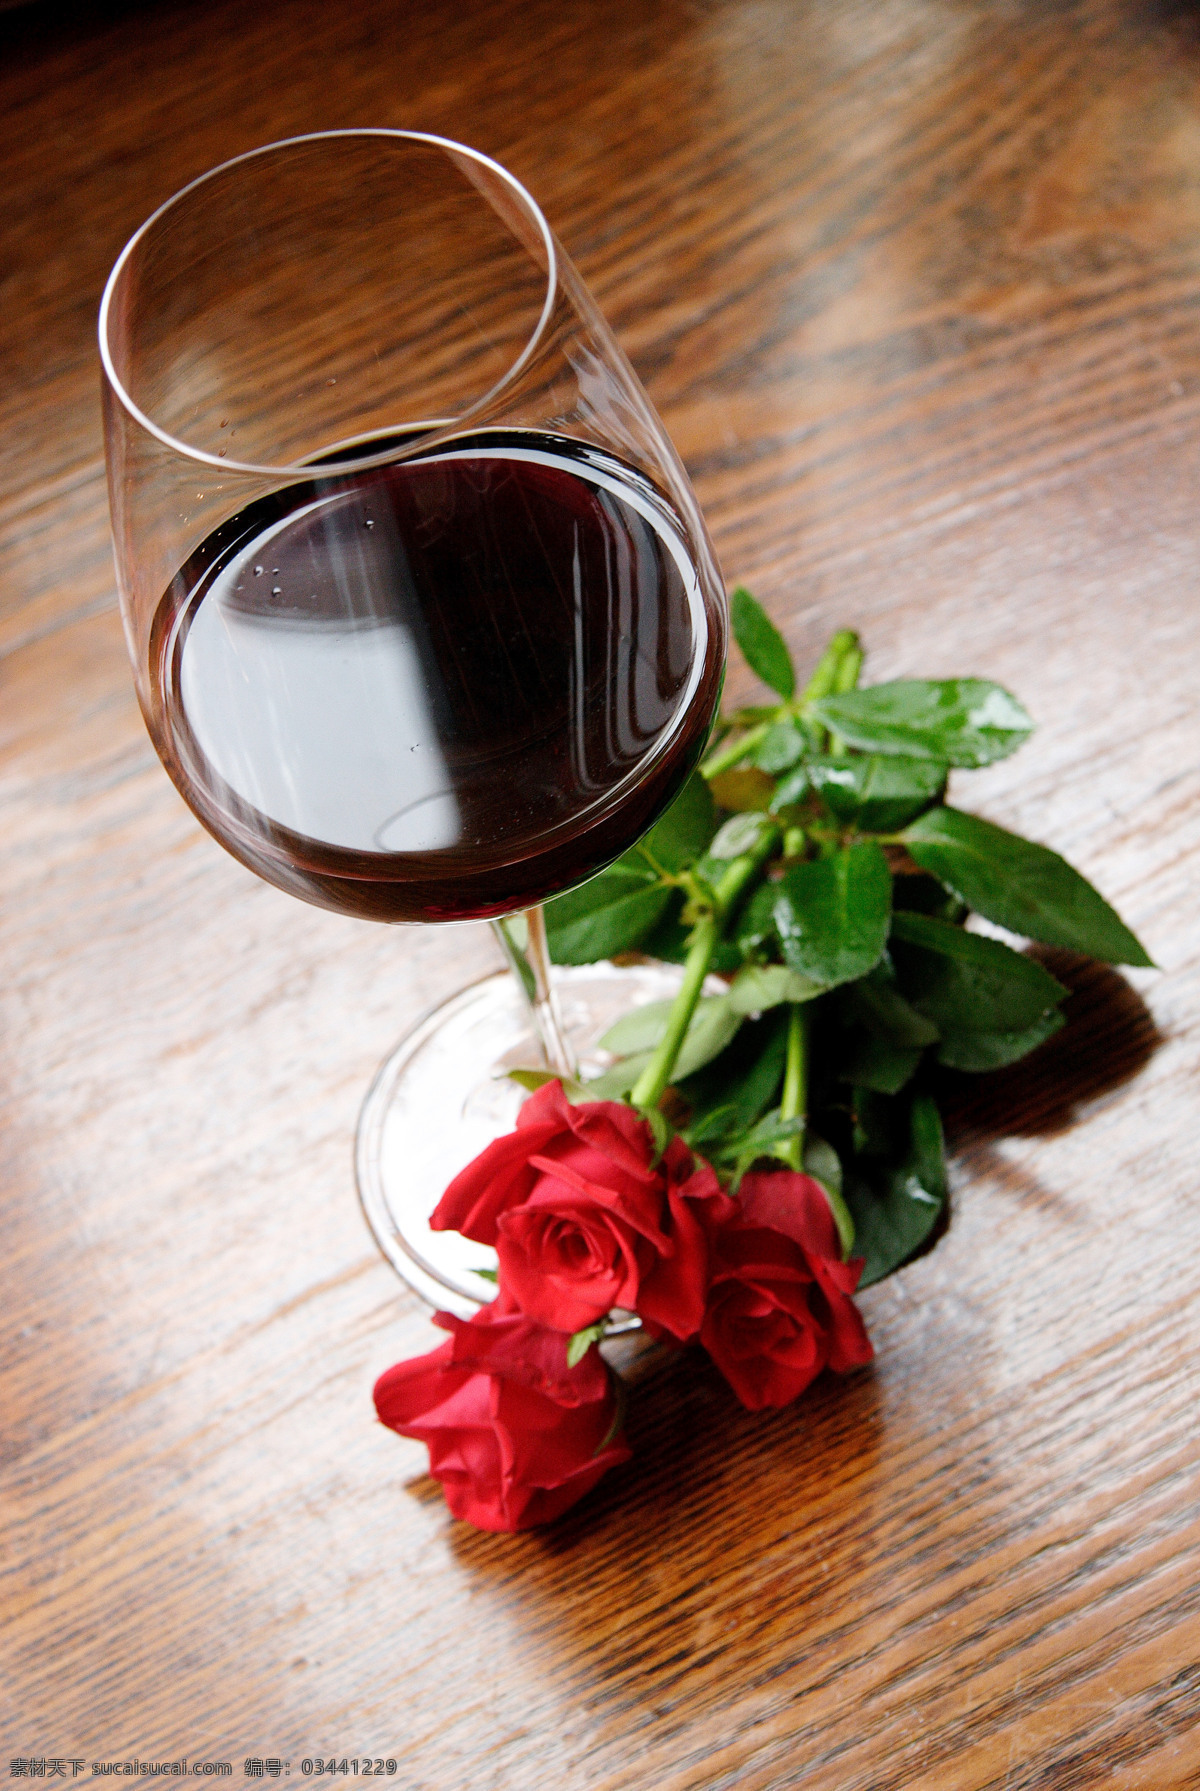 玫瑰花 葡萄酒 一杯葡萄酒 高脚杯 浪漫情调 品味生活 木板 情人节 高清图片 酒类图片 餐饮美食